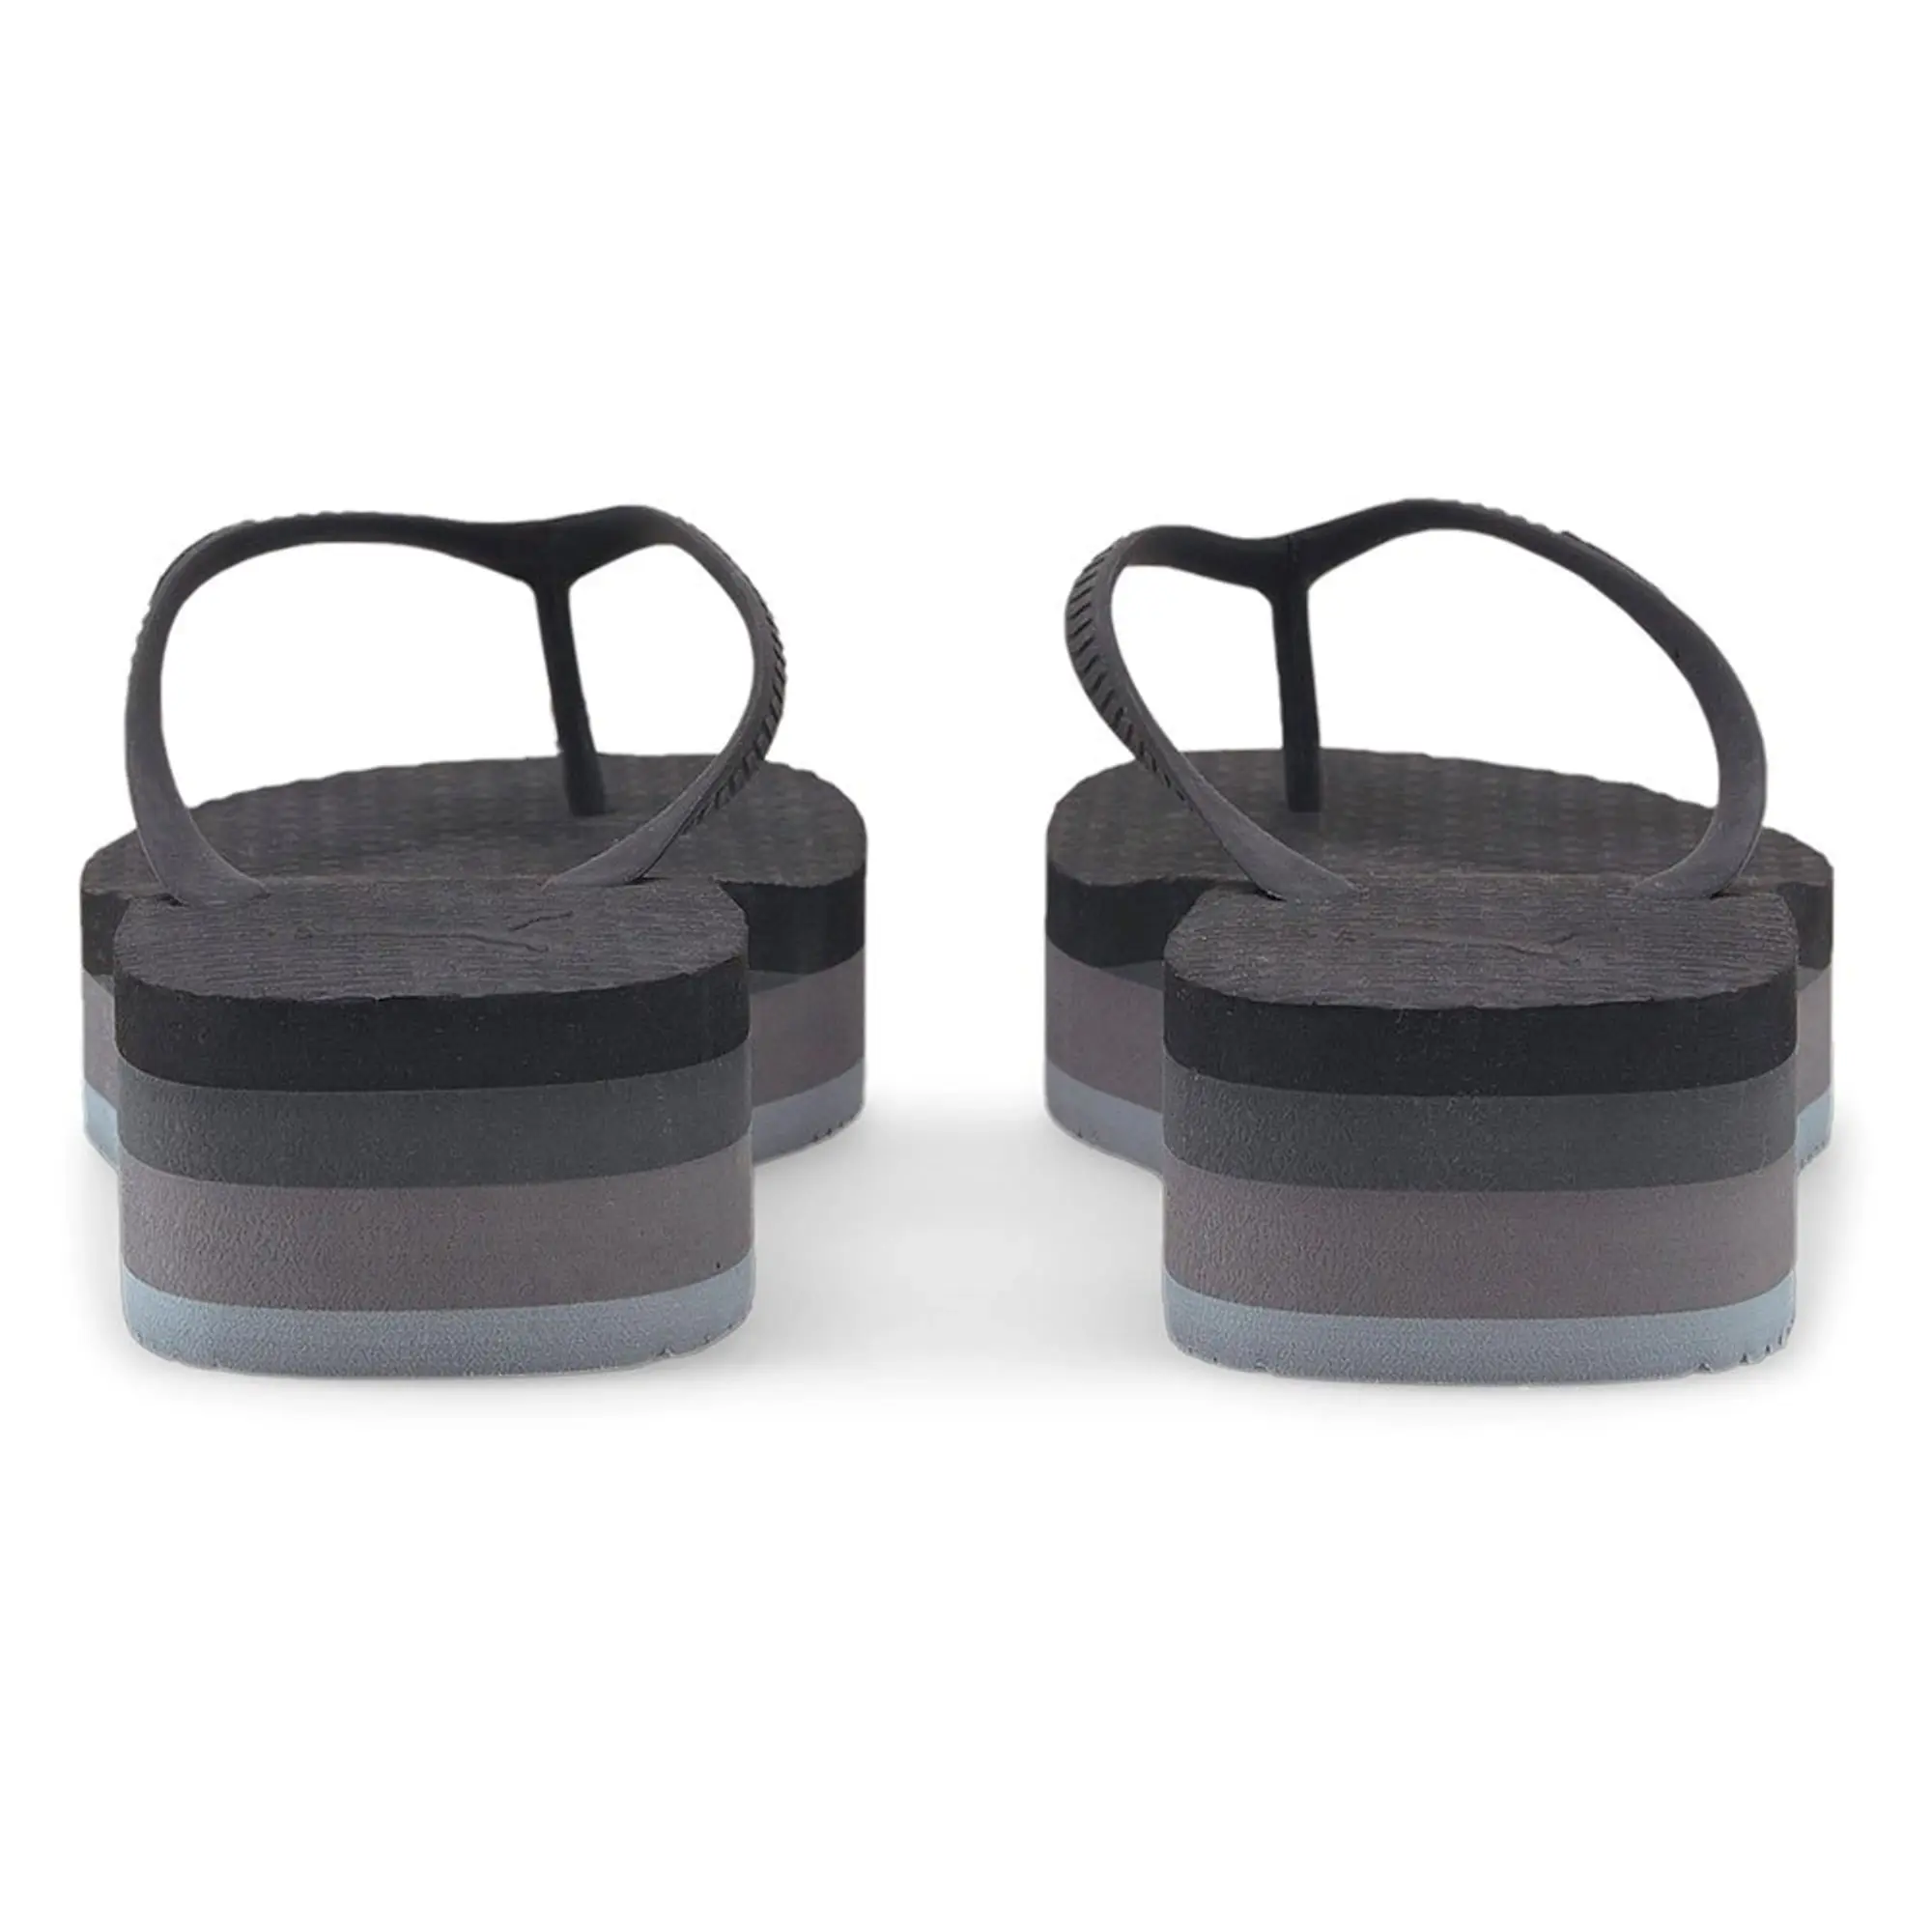 Puma Comfy Flip Platform Sandals Black